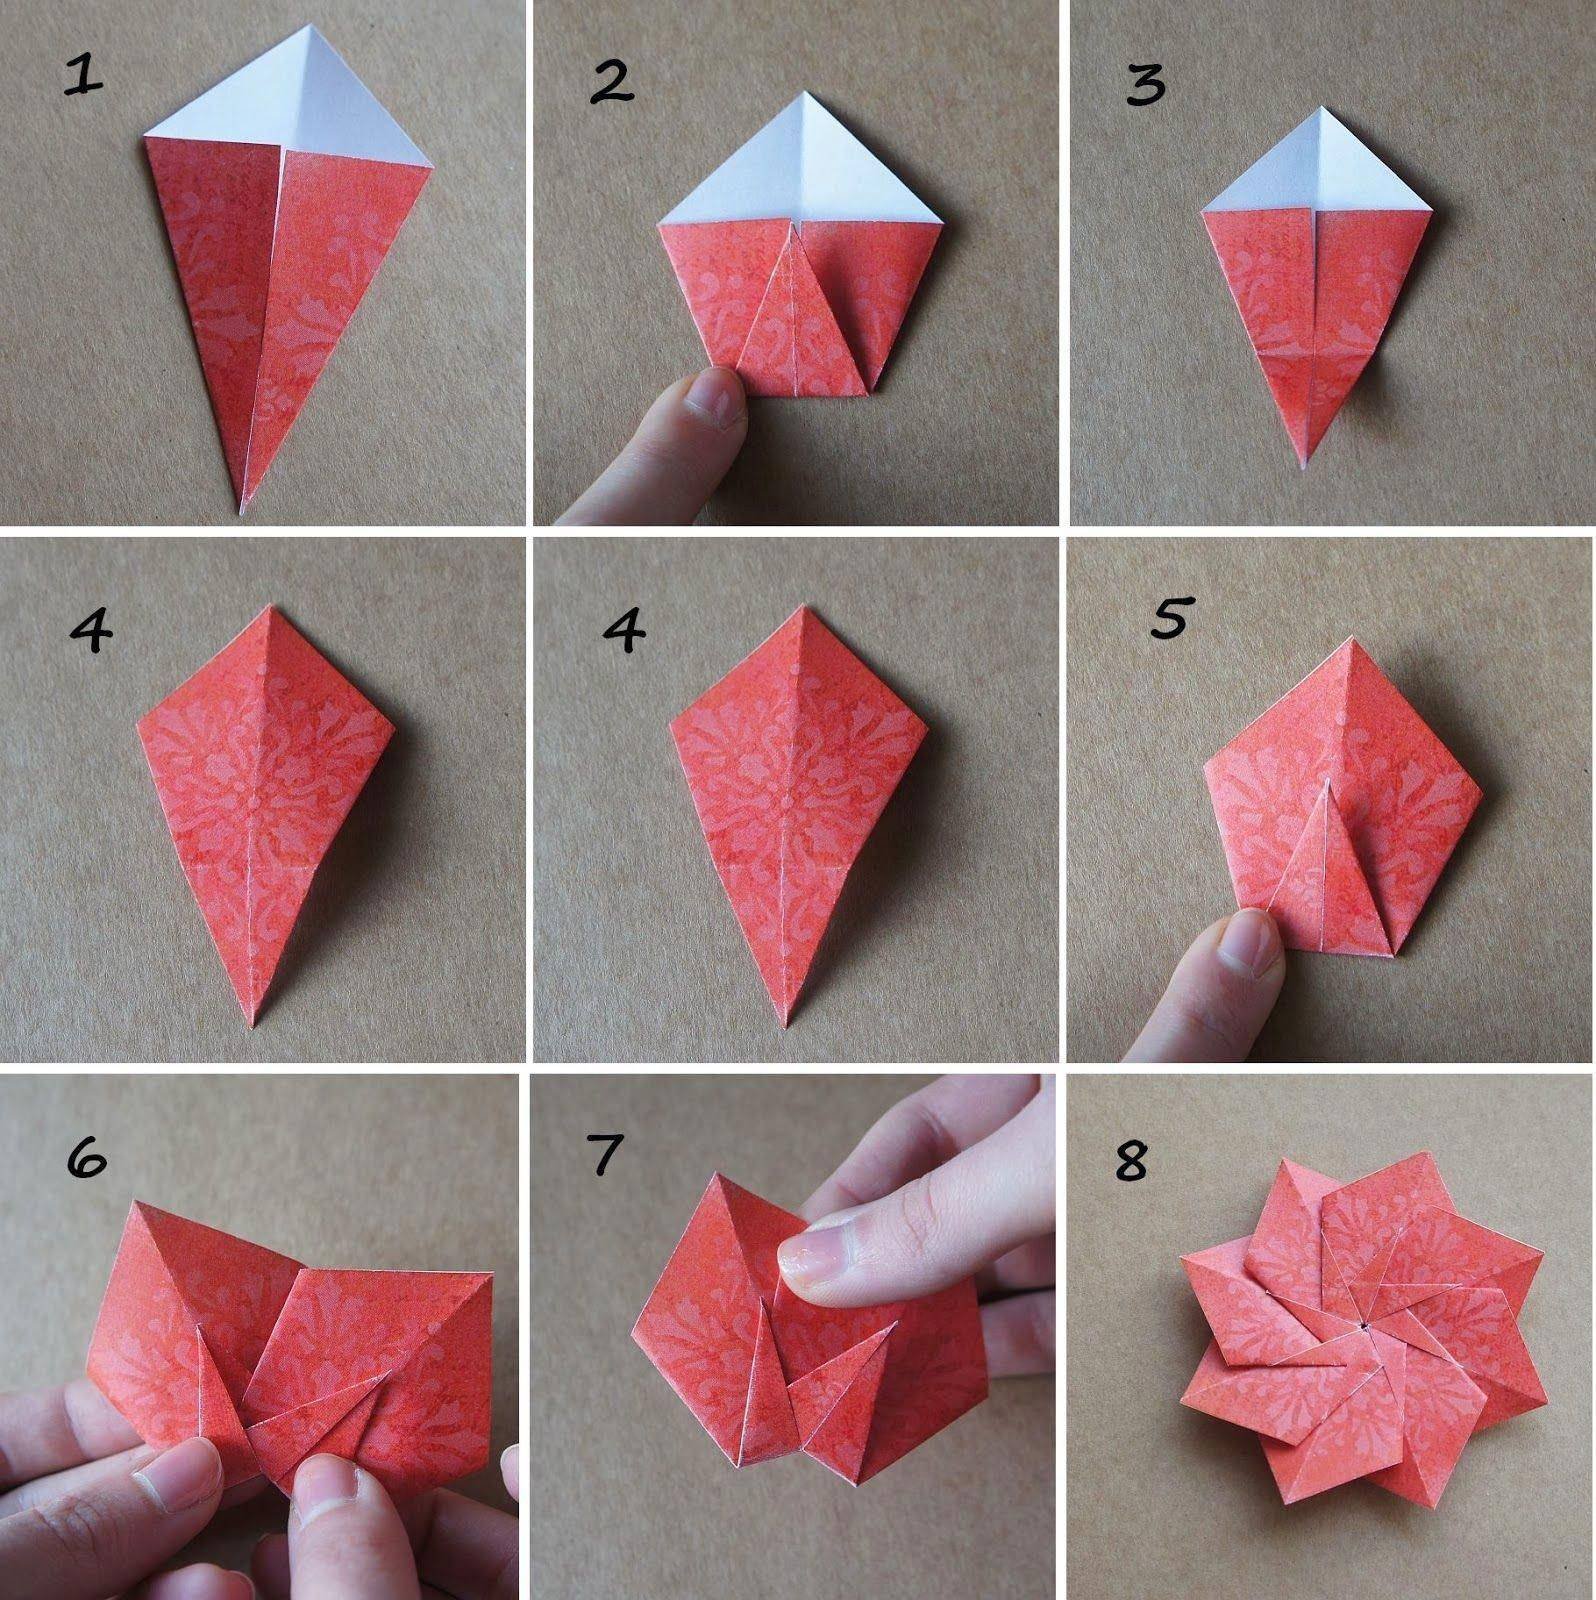 Как сделать цветы из бумаги без клея. Оригами цветок. Цветы из оригами. Оригами красивые и легкие. Лёгкий цветок из думаги оригами.